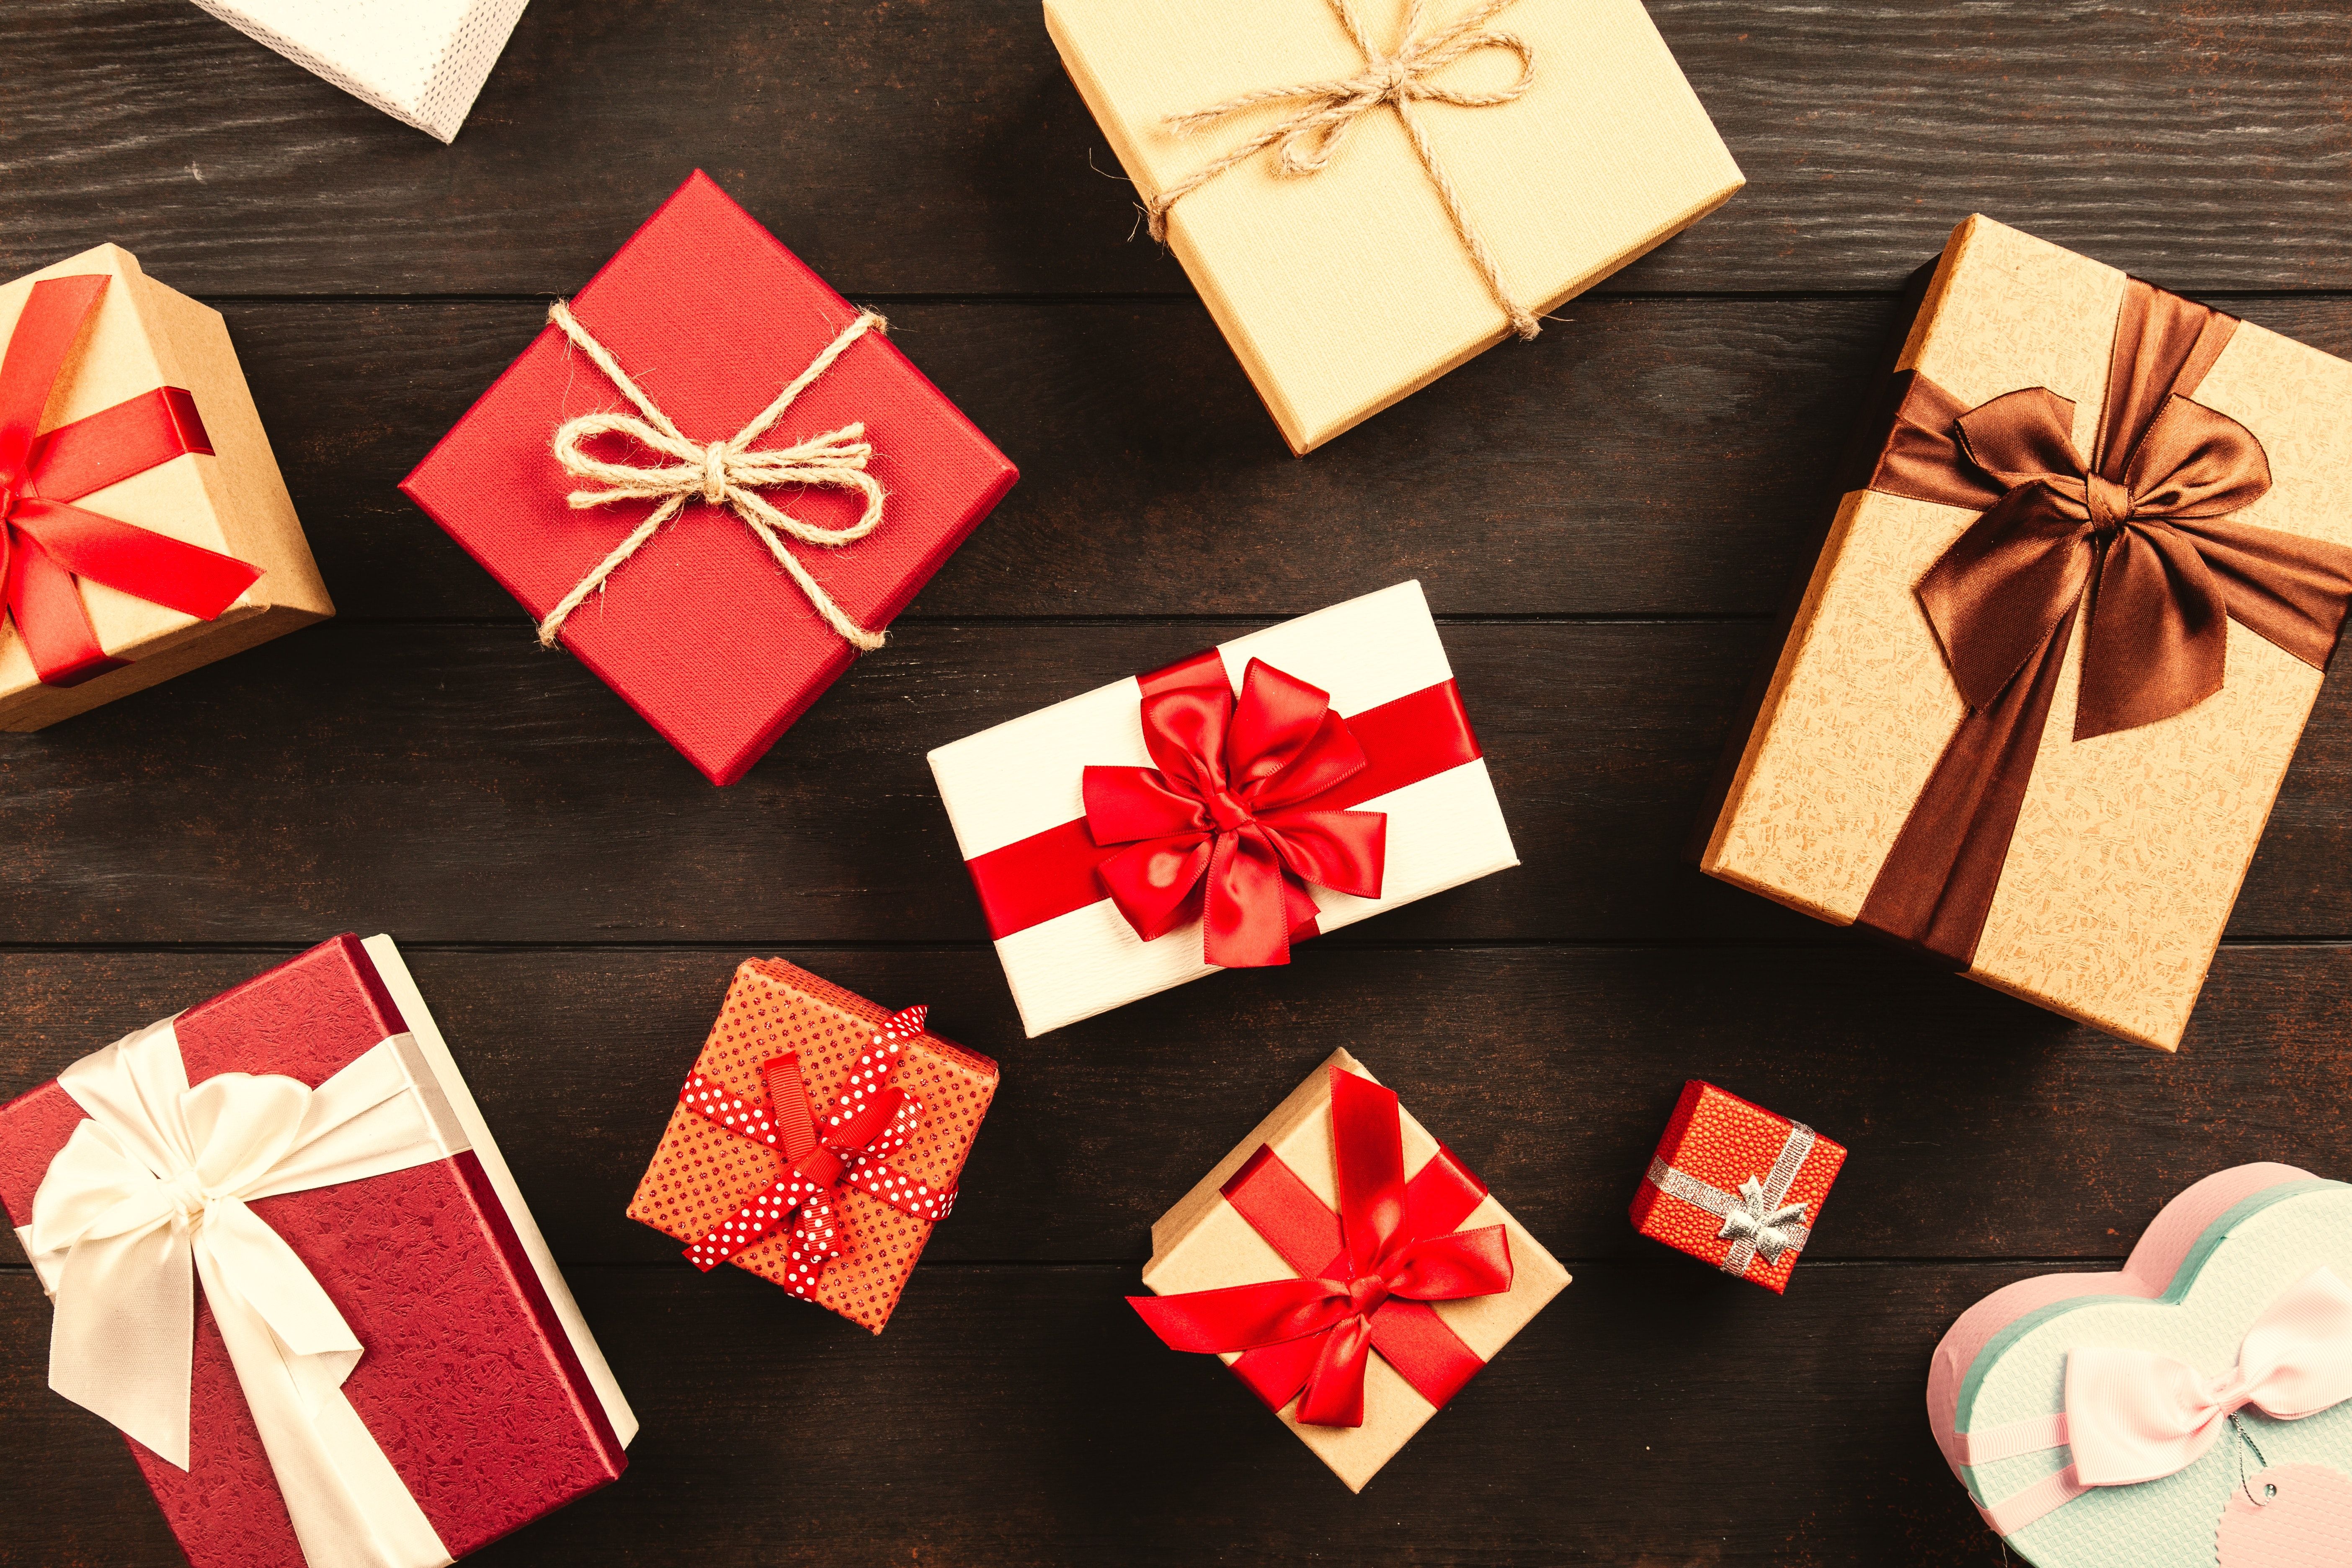 Álmaink ajándékai – 5 tipp, hogy őszinte legyen az öröm a fa alatt